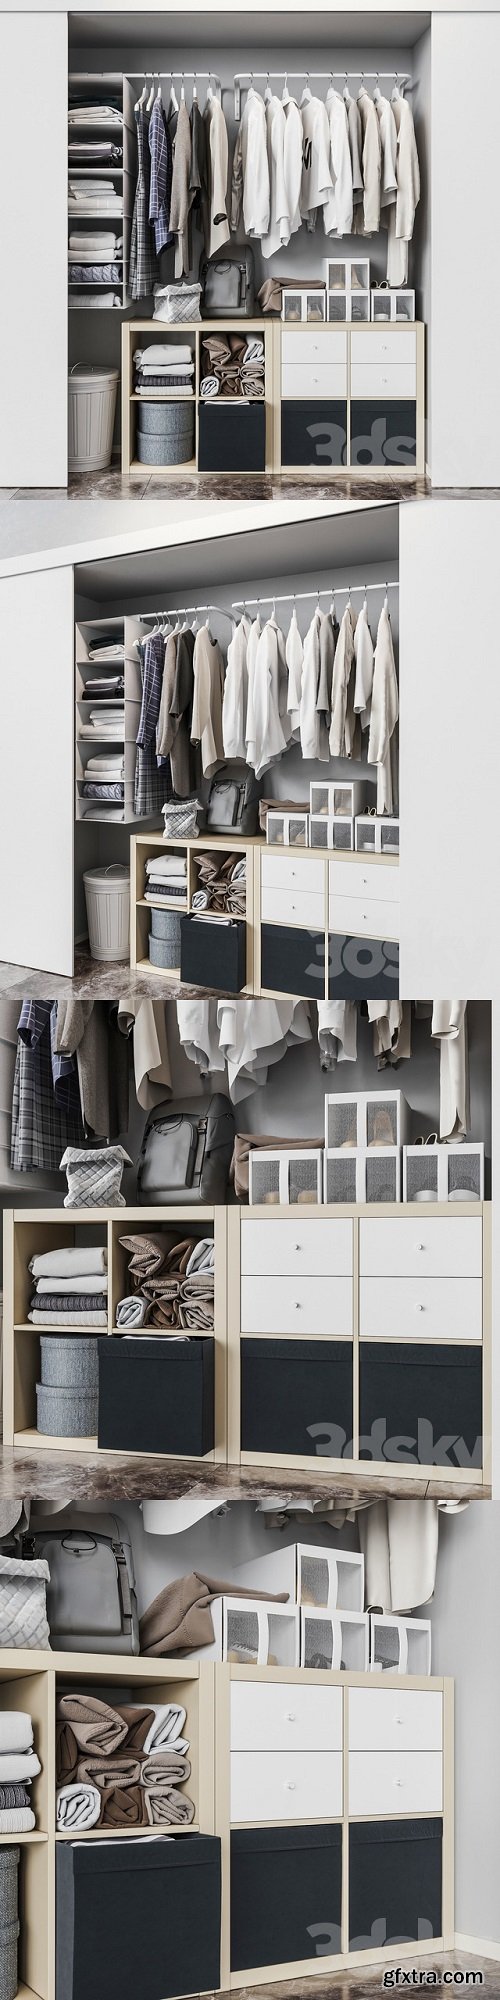 Ikea ikea Built-in wardrobe